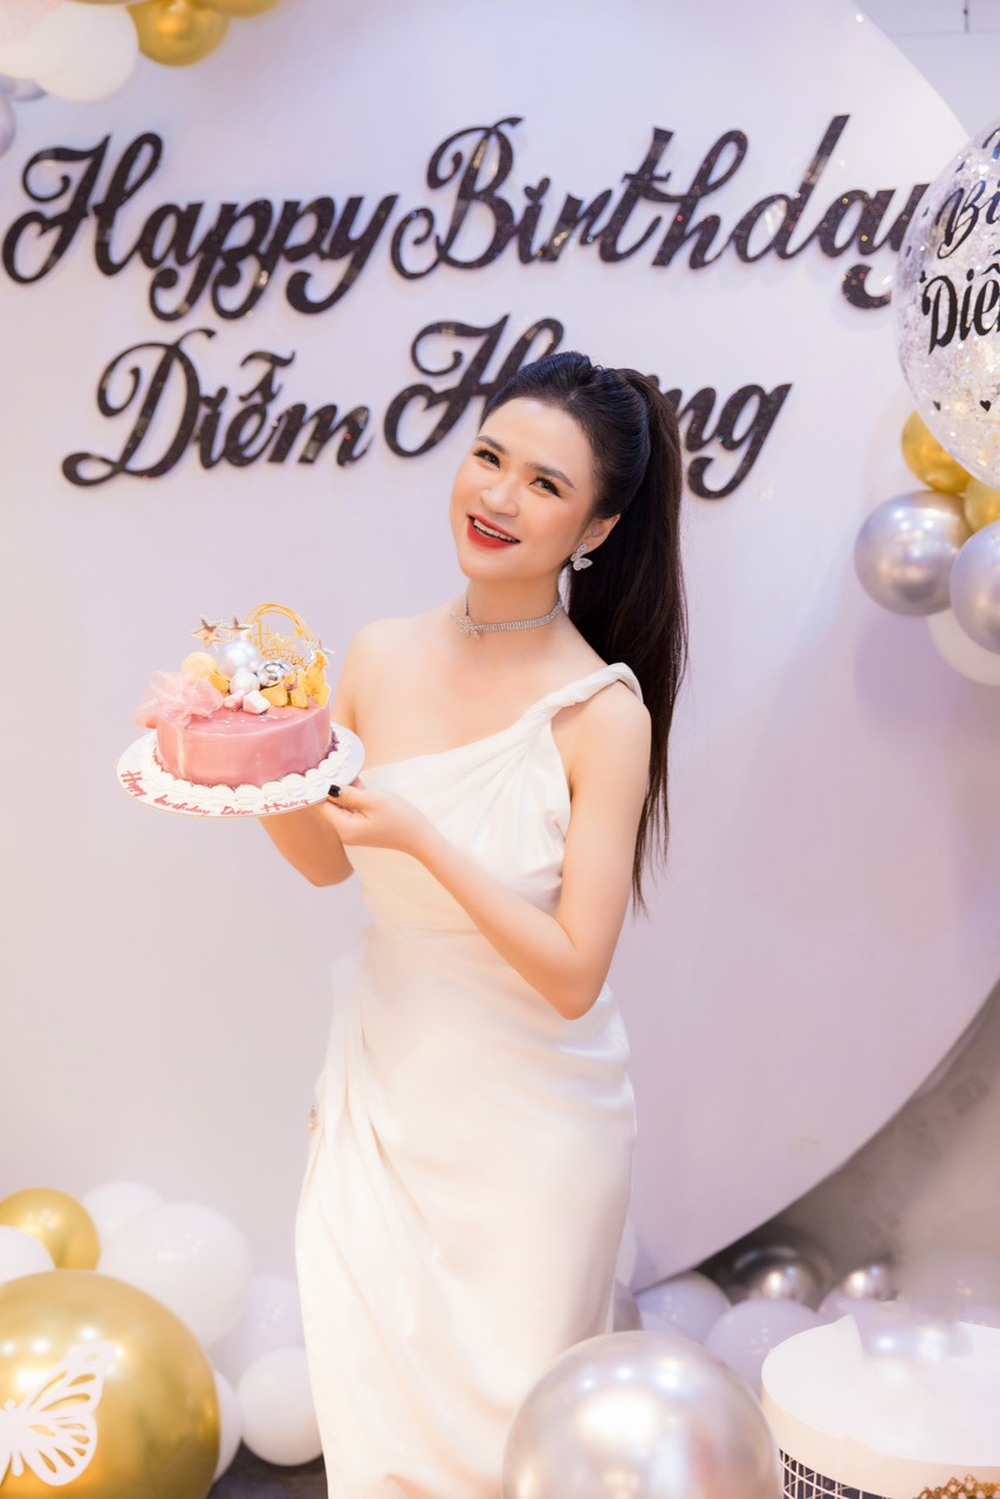 Hoa hậu Trang sức Việt Nam Trần Thị Diễm Hương đẹp rạng ngời trong ngày sinh nhật   - Ảnh 2.